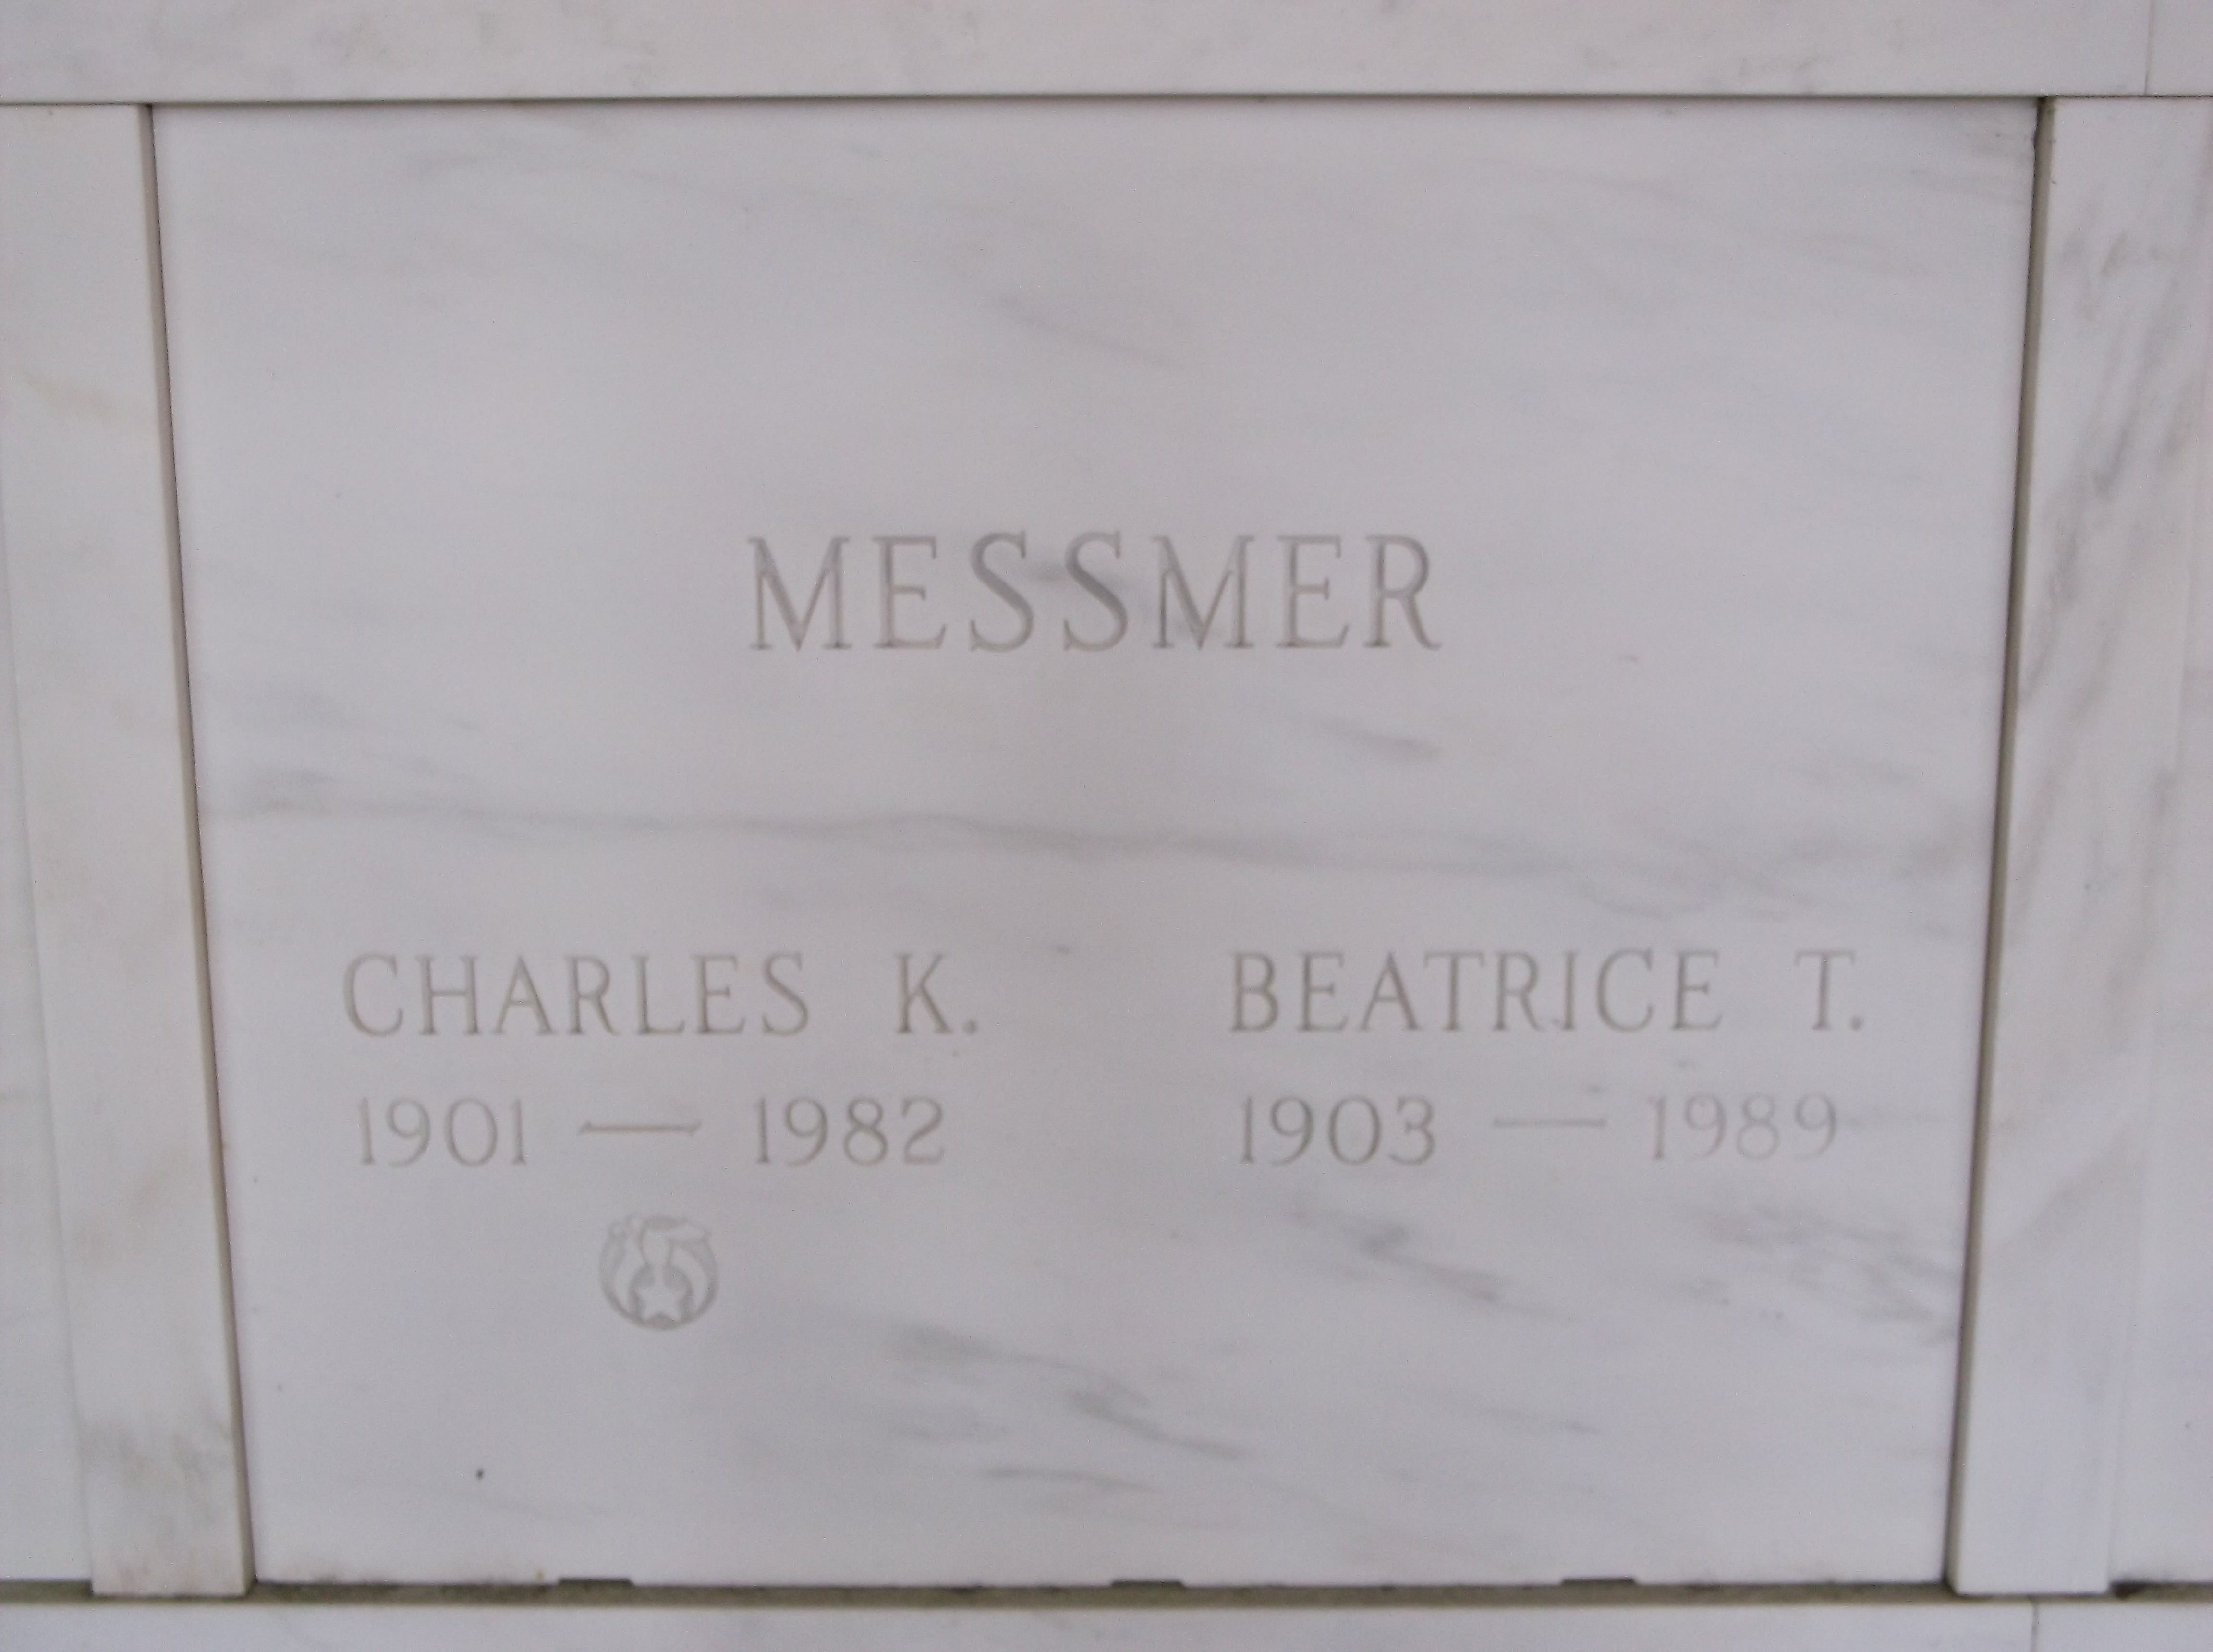 Charles K Messmer